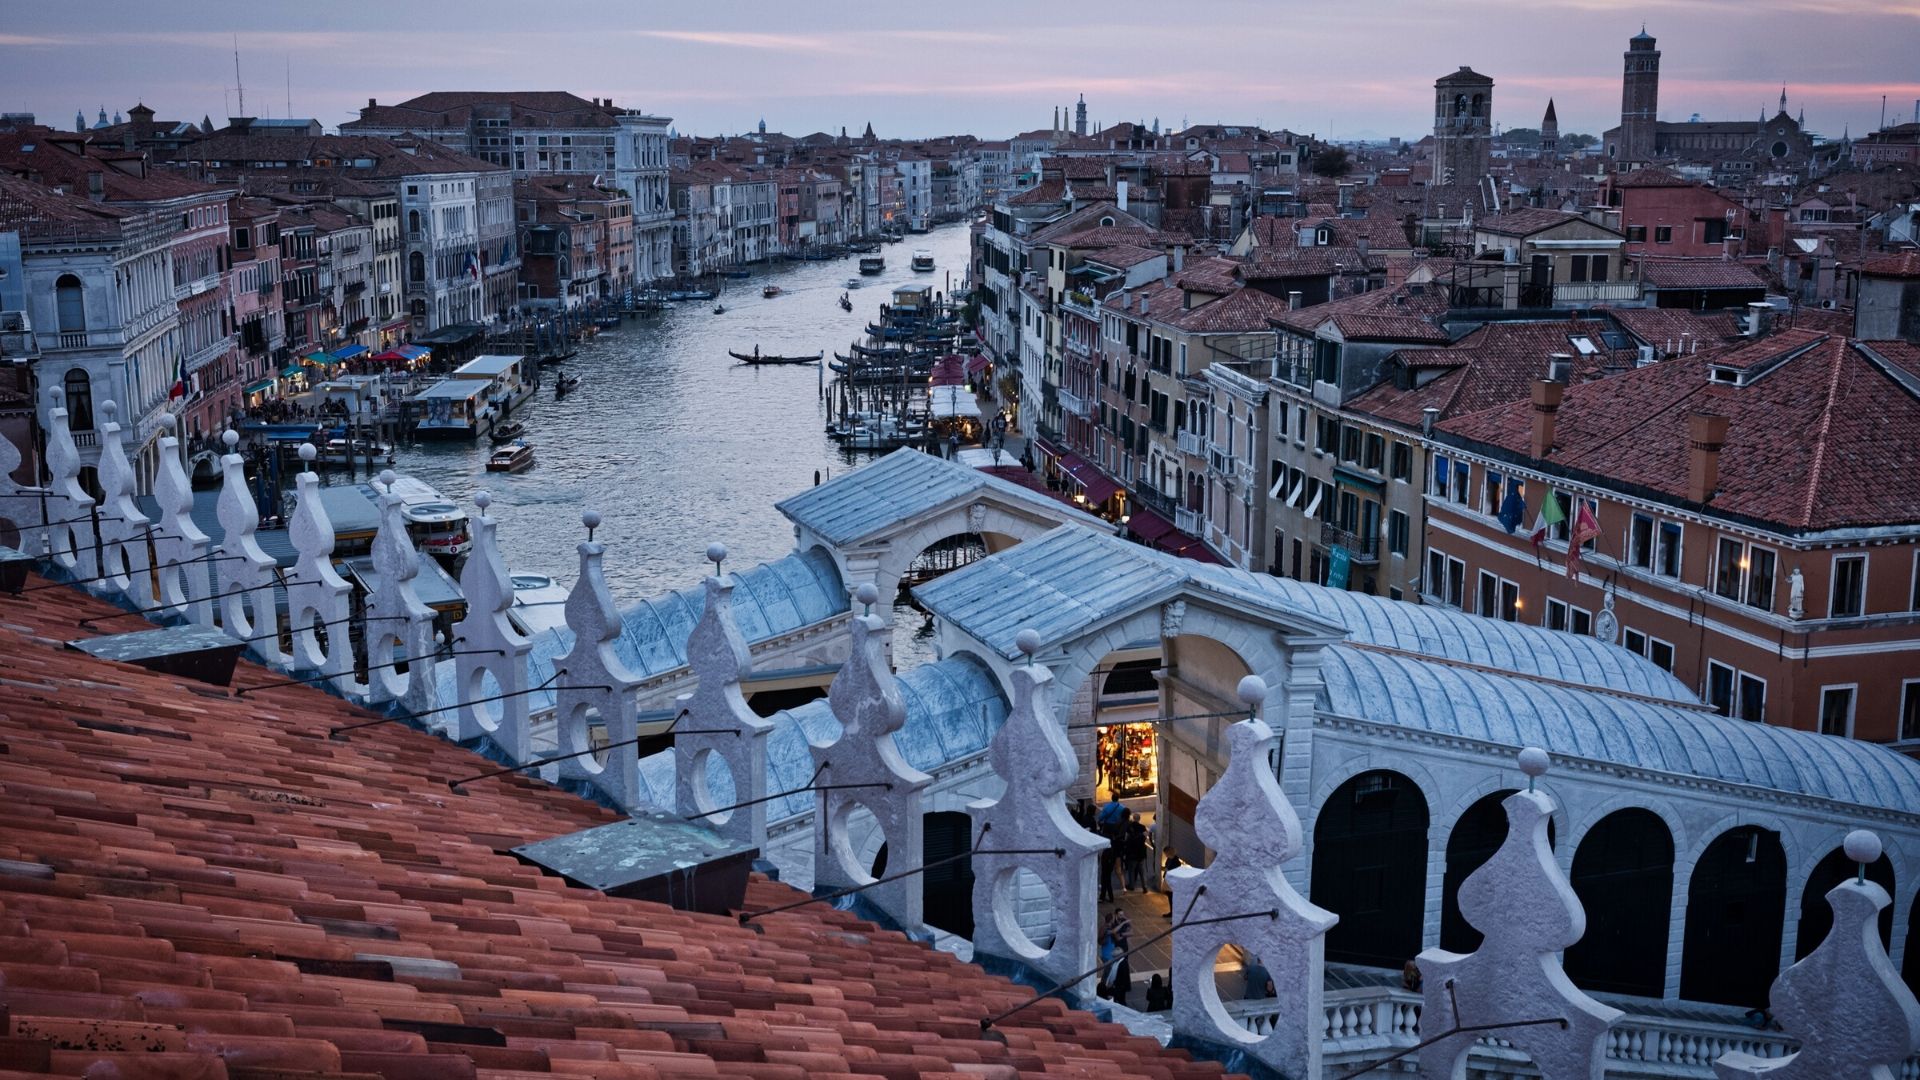 Where is the Rialto Bridge in Venice?